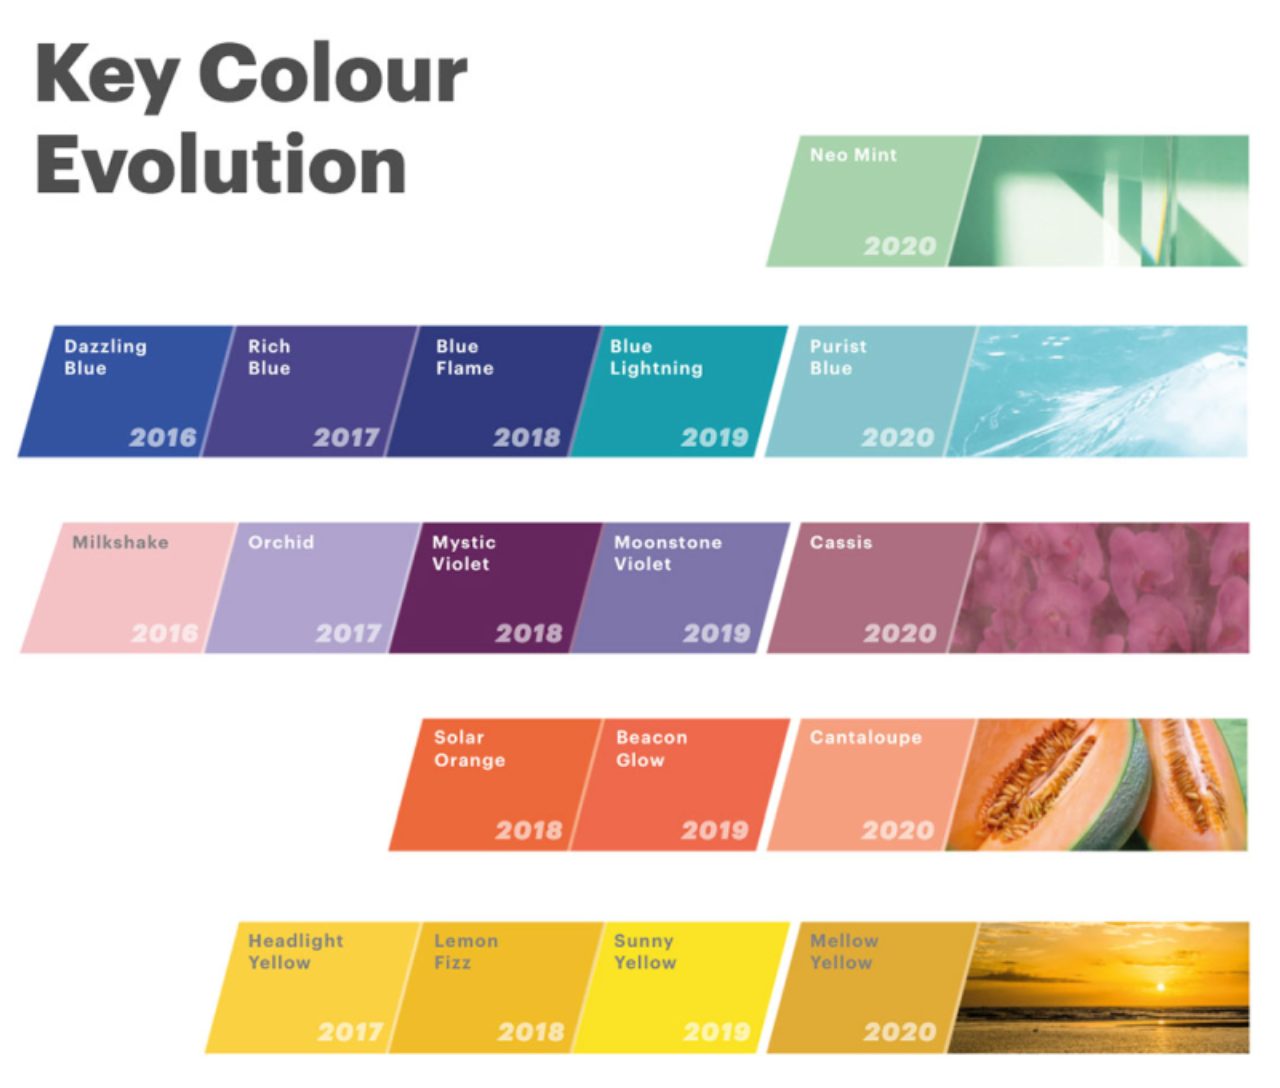 Evolução das tendências de cores ao longo dos anos de acordo com a WGSN. Foto: Reprodução/WGSN